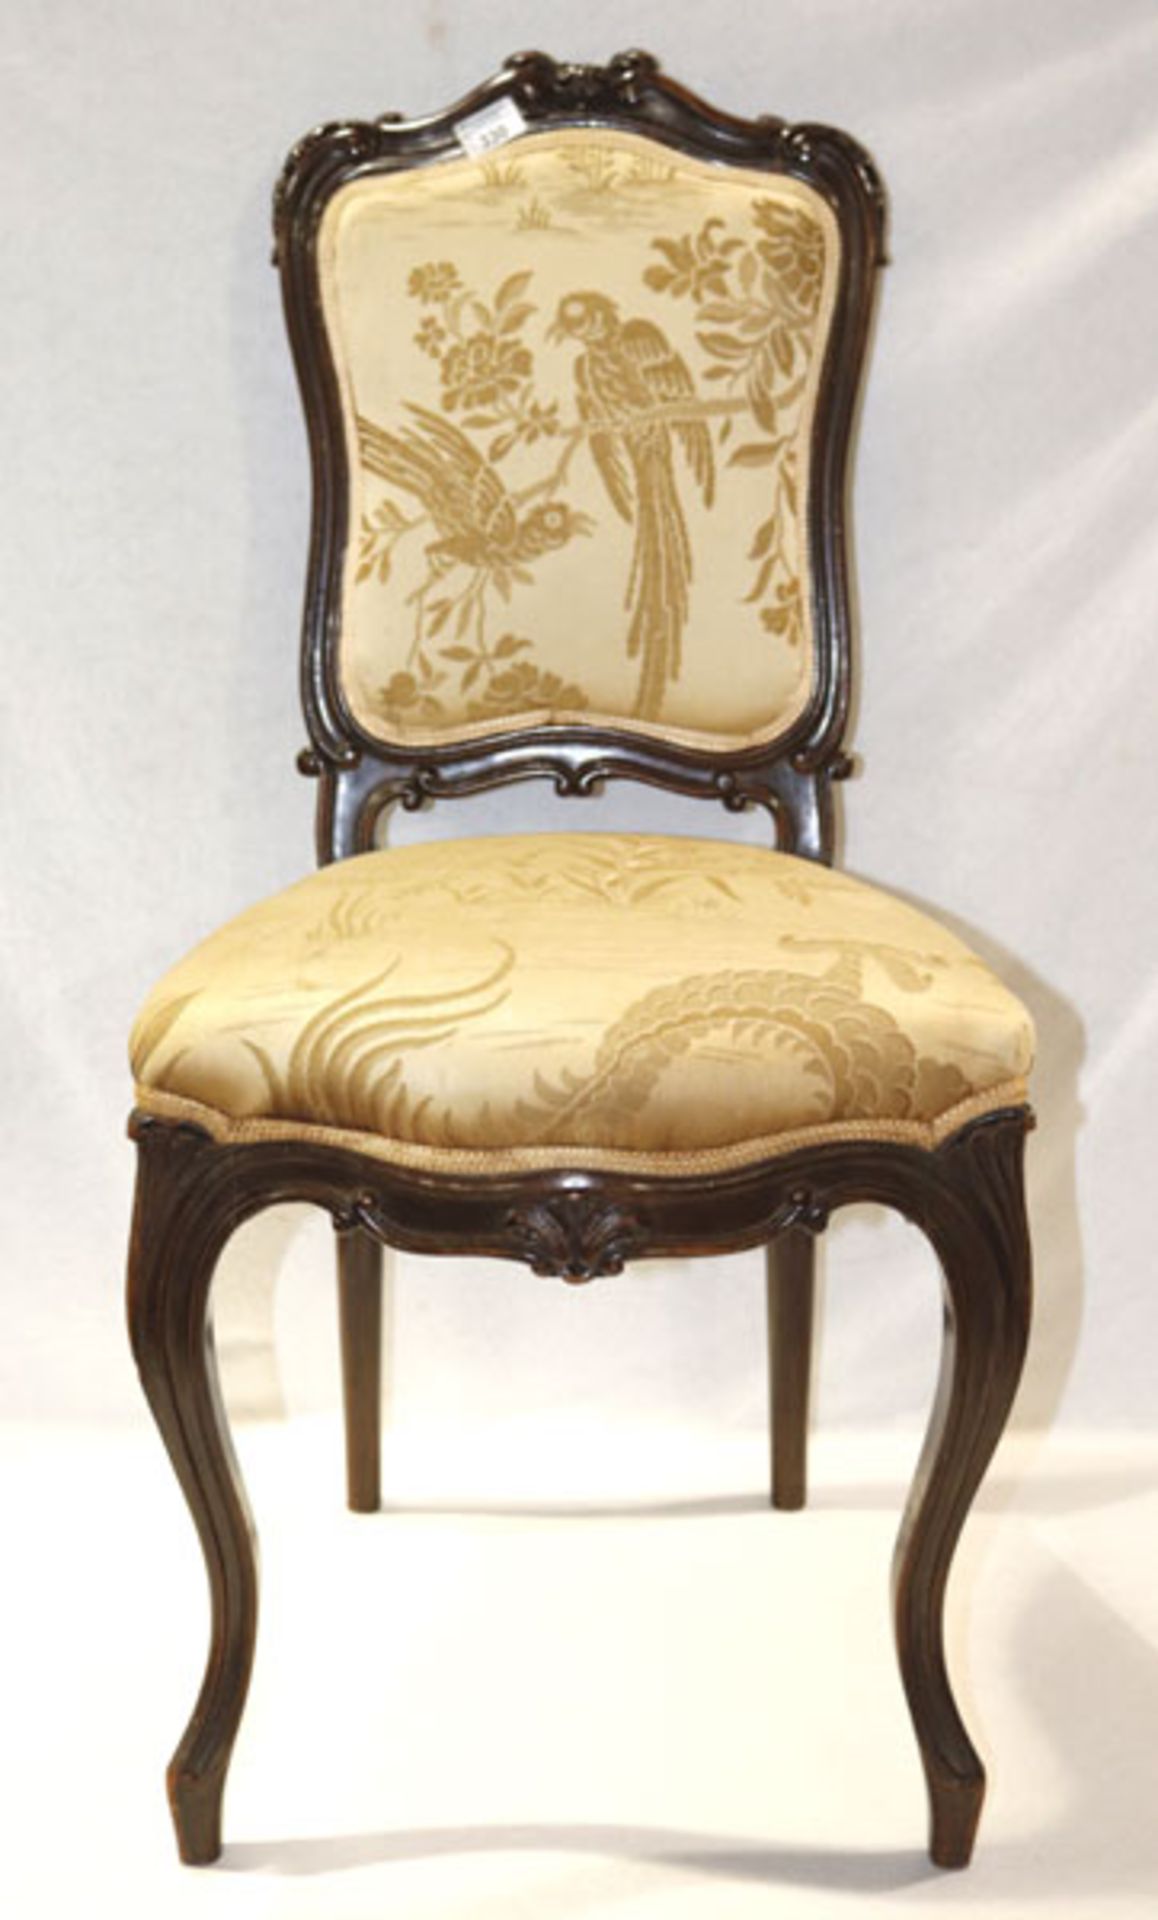 2 Stühle auf geschwungenen Beinen, teils beschnitzt, Sitz und Lehne gepolstert und gold bezogen, H